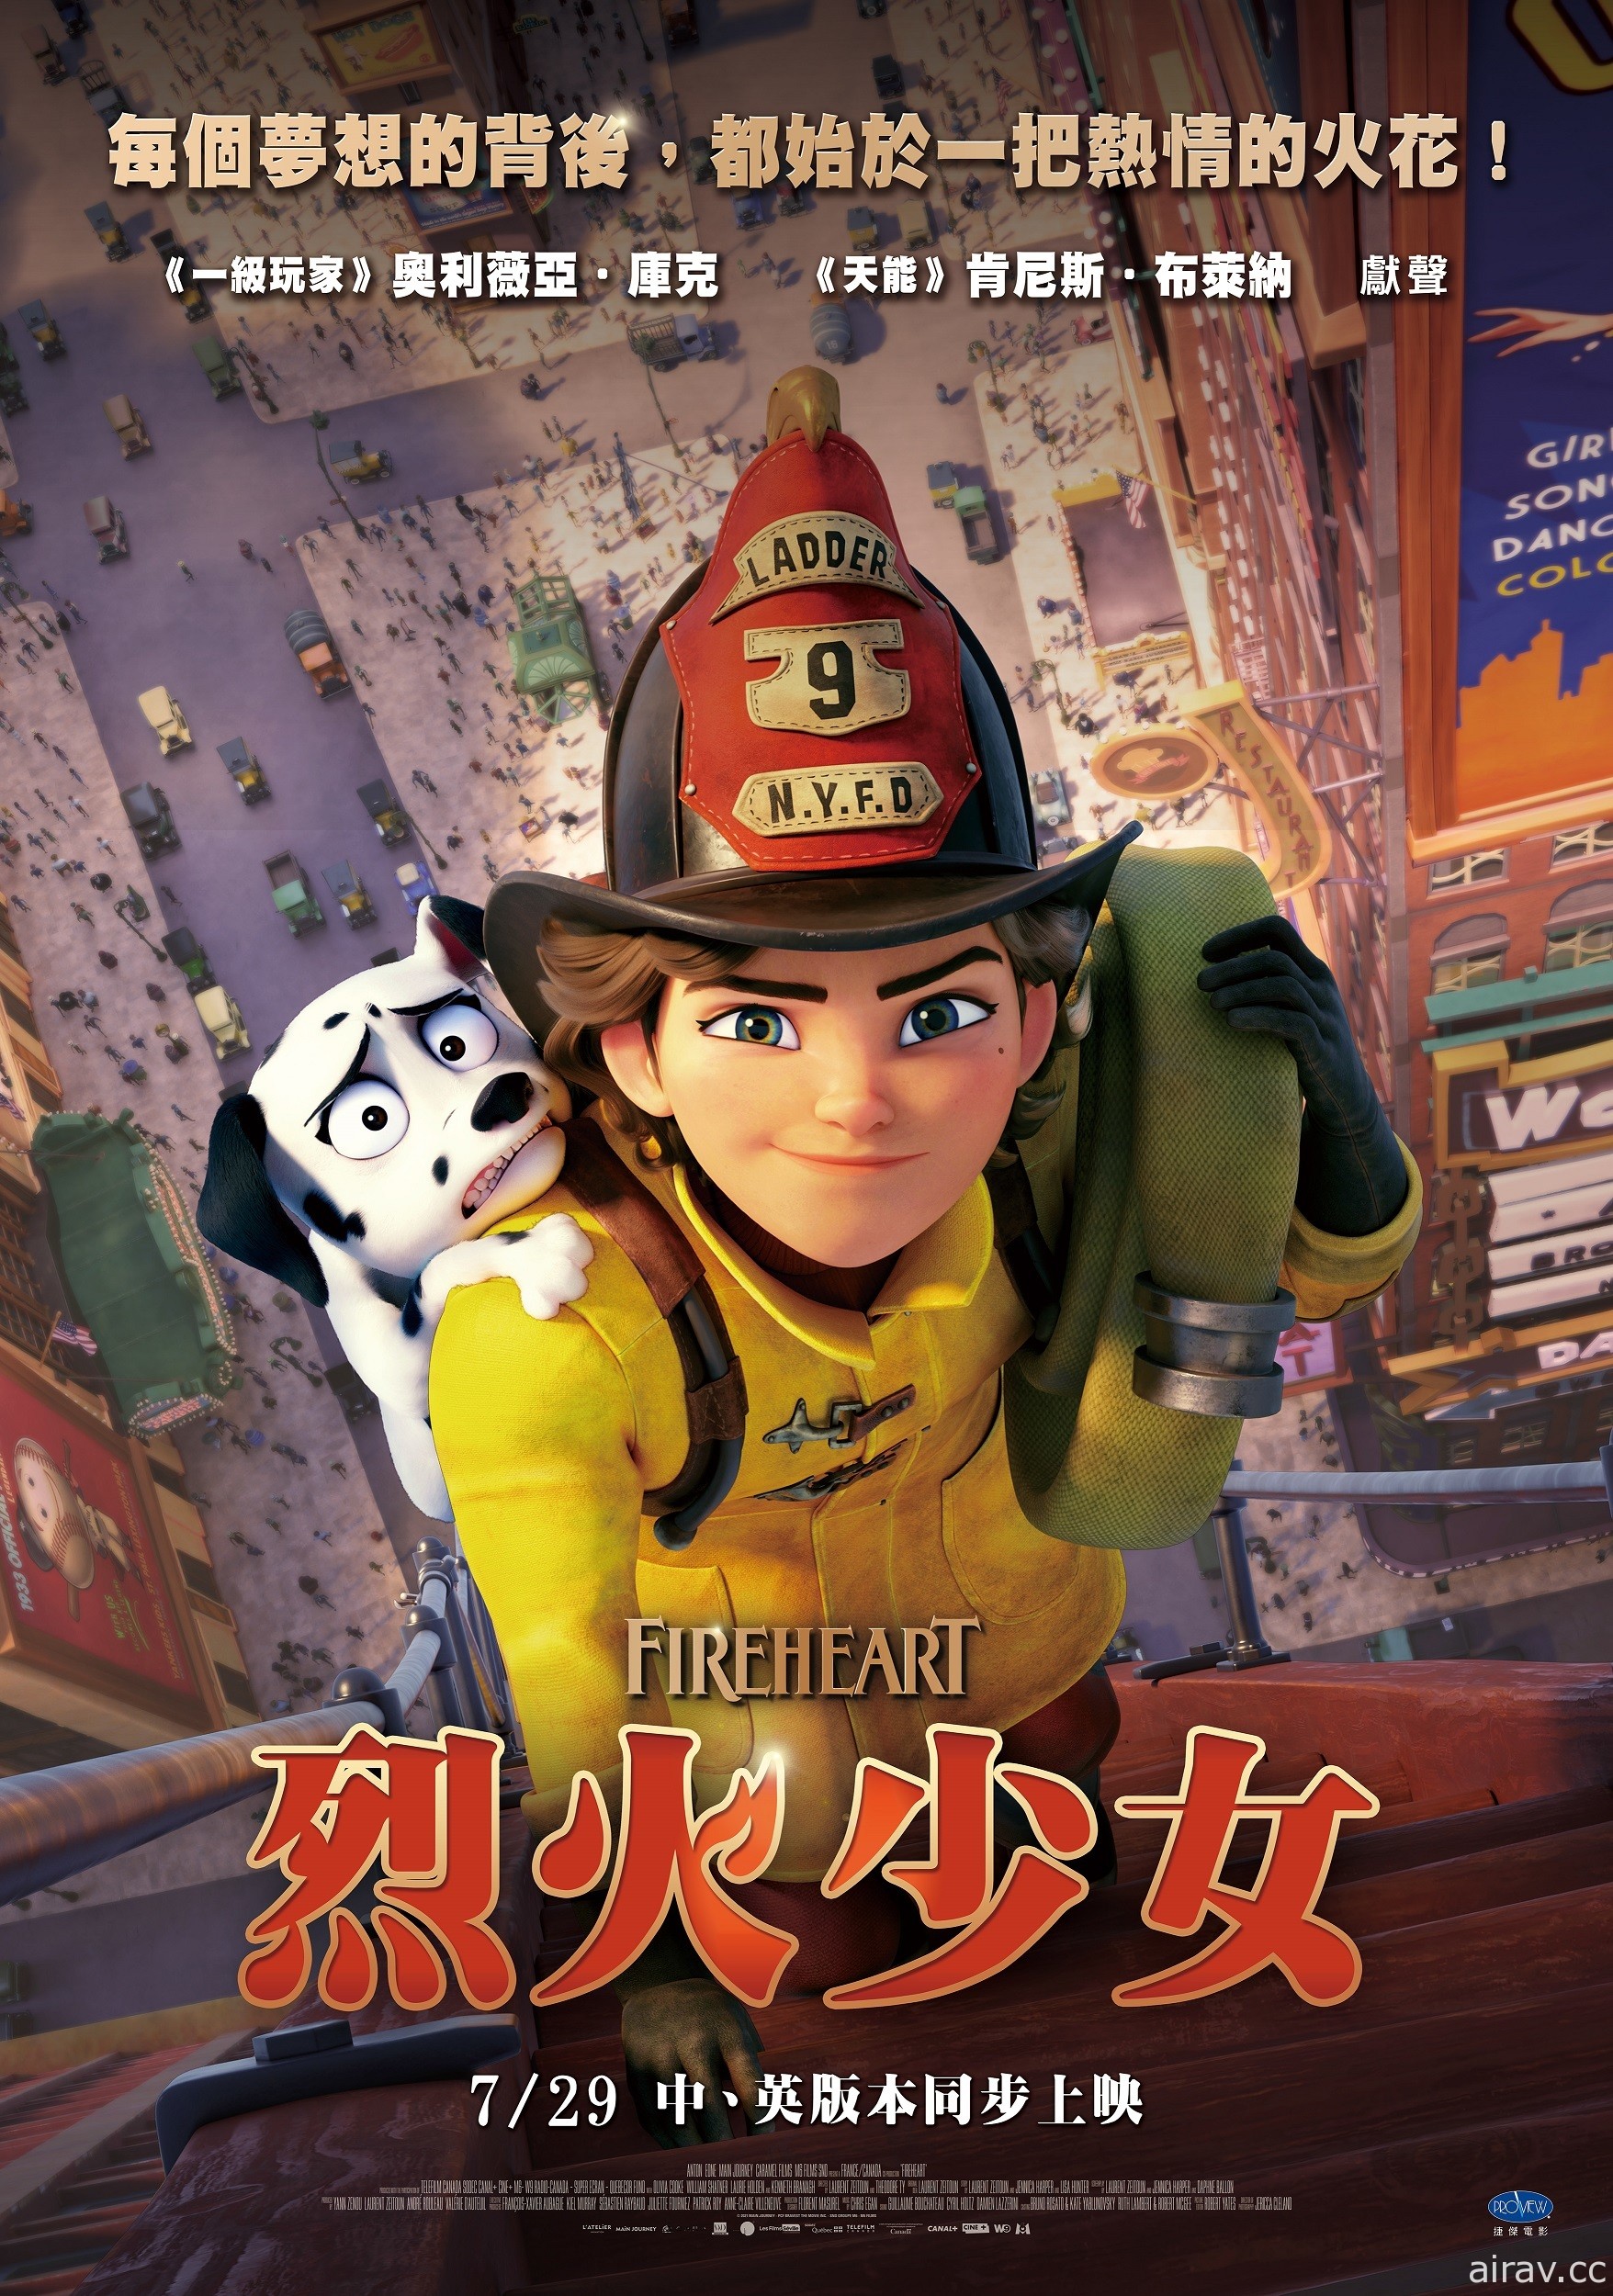 梦想成为消防员《烈火少女》动画电影 7/29 中英版本同步在台上映